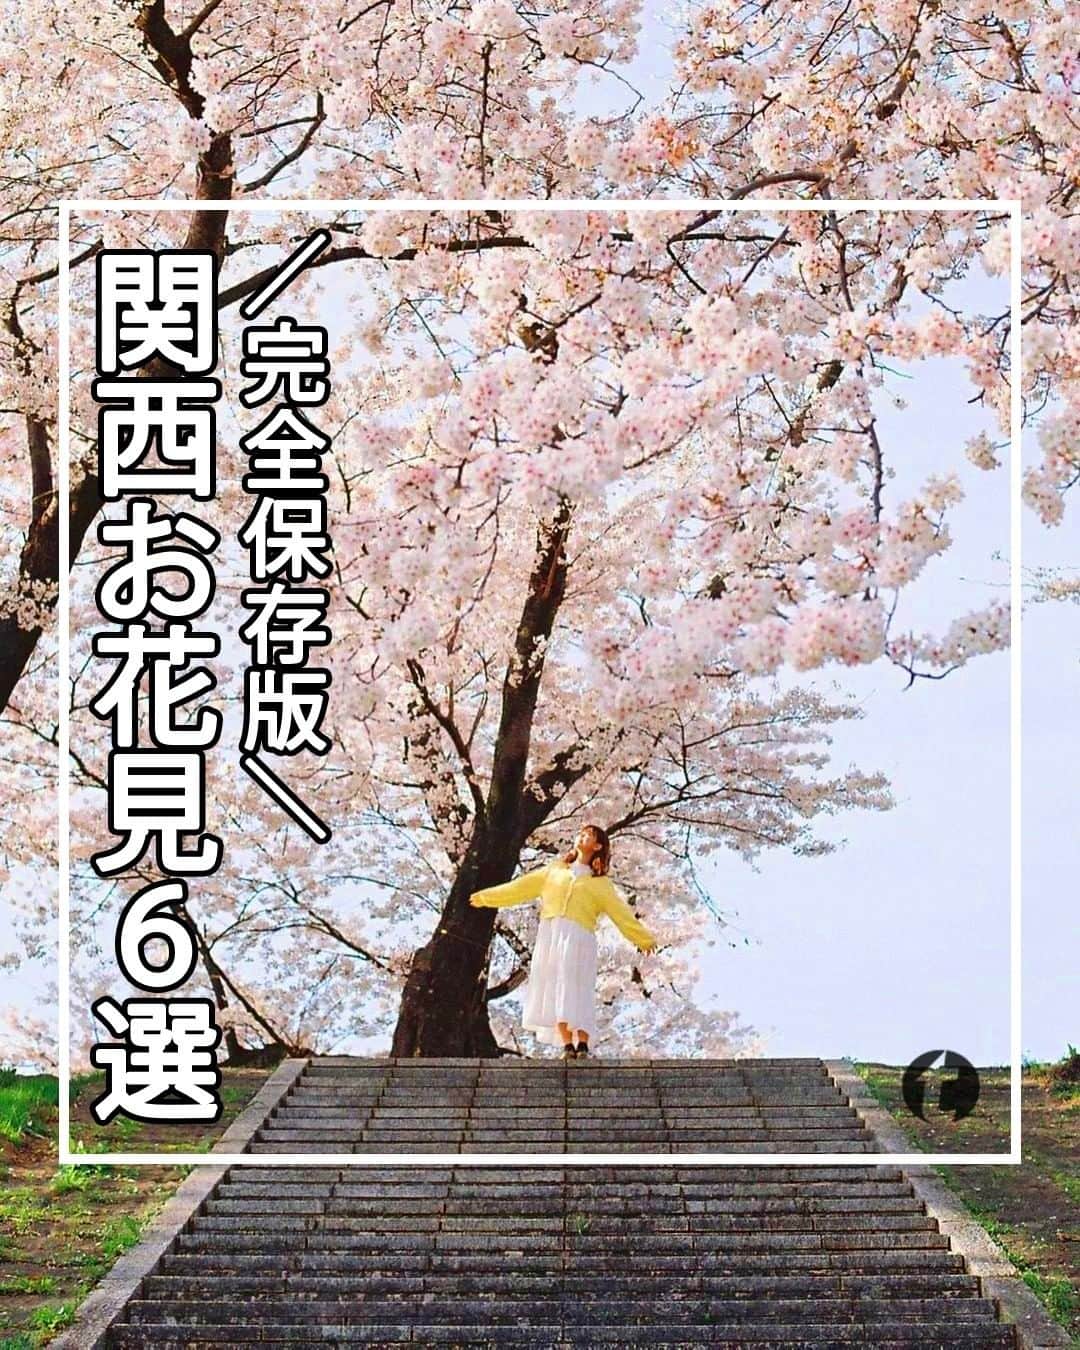 旅工房公式のインスタグラム：「＼もうすぐ見頃！桜の名所／  #関西 #お花見スポット #桜スポット  皆さんこんにちは！ 暖かくなってきて、昼間はアウターもいらないくらいの暖かさ…☀ 桜のつぼみも歩いていると目に入るようになってきました～！ そんな今日は。お花見スポットを関西に絞ってまとめてみました🌸  ぜひ参考にして訪れてみてください＼(^o^)／ 💚  ━━━━━━━━━━━━━━━ ▽ お写真ありがとうございます❣  📍大阪城公園 @satomi24jp さん 広大な大阪城公園全体を約3000本の桜が埋め尽くす春だけの絶景スポット！ 玉造口には遅咲きの八重桜が咲くのでシーズン最後まで楽しむことが出来ますよ！  開花時期▷開花時期：3月下旬～4月中旬  アクセス▷JR大阪城公園駅 / JR・地下鉄森ノ宮駅 / 地下鉄谷町四丁目駅　下車すぐ   📍淀川河川公園背割堤地区 @masa_nikonist さん 1.4kmに渡って満開のソメイヨシノがピンクのトンネルのようになる絶景スポット！ 3/25（土）～4/9（日）には「背割堤さくらまつり」が開催されます！  開花時期▷3月下旬～4月上旬 アクセス▷京阪電車 石清水八幡宮駅から徒歩約10分  ※3月25日(土)～4月4日(火)の間、 阪急西山天王山駅より会場までのシャトルバスが運行予定。  📍円山公園 @mitchan313 さん 回遊式日本庭園が中心の京都市内最古の公園。 見どころは歌人・与謝野晶子も愛でたという「祇園のシダレザクラ」。 夜はライトアップもされ、昼とは違った雰囲気になりますよ。  開花時期▷3月下旬～4月上旬 アクセス▷地下鉄東西線 円山公園駅下車 ３番出口から徒歩5分   📍十石舟 @haruhanafusa さん 江戸時代の輸送船を再現した遊覧船に乗りながら桜を楽しめるおすすめスポット！ 江戸時代にタイムスリップしたような気分で桜を鑑賞できます◎  開花時期▷3月下旬～4月上旬 アクセス▷京阪本線・宇治線 中書島駅下車後徒歩約5分   📍おの桜づつみ回廊 @hina51034 さん 西日本最大級の小野の桜並木！長さはなんと全長約4㎞！ 時期によっては菜の花も割いているので、ピンクと黄色のかわいい景色を見ることが出来ます◎  開花時期▷3月下旬～4月上旬 アクセス▷JR・神戸電鉄粟生駅から徒歩15分 2023年4月1日(土)・2日(日)はシャトルバス運行あり ※詳細は市公式サイトをご確認ください。  📍吉野山 @tatsuya_yoshikawa さん 桜の名所として有名な奈良のお花見スポット。 シロヤマザクラを中心に約200種3万本の桜が山全体を埋め尽くします！ 標高によって開花時期が違うので長く桜を楽しめますよ♪  開花時期▷ 3月下旬～4月中旬 アクセス▷お花見の場所によってアクセスが変わるので、公式ＨＰをチェック！  海外・国内問わず、素敵なスポットやグルメ、アイテムの写真にはぜひ #旅工房 や @tabikobo をタグ付けして下さい💕 ━━━━━━━━━━━━━━━  #旅工房 #旅pocket #旅行好きな人と繋がりたい #大人旅 #旅スタグラム  #タビジョ #女子旅 #お花見 #桜の名所 #桜 #お花見 #花見 #桜ライトアップ #桜まつり #桜祭り #お花見デート #お花見ピクニック #お花見散歩 #お花見ランチ #お花見ドライブ #関西桜 #大阪桜スポット #桜並木 #夜桜 #夜桜ライトアップ #春のお出かけ」